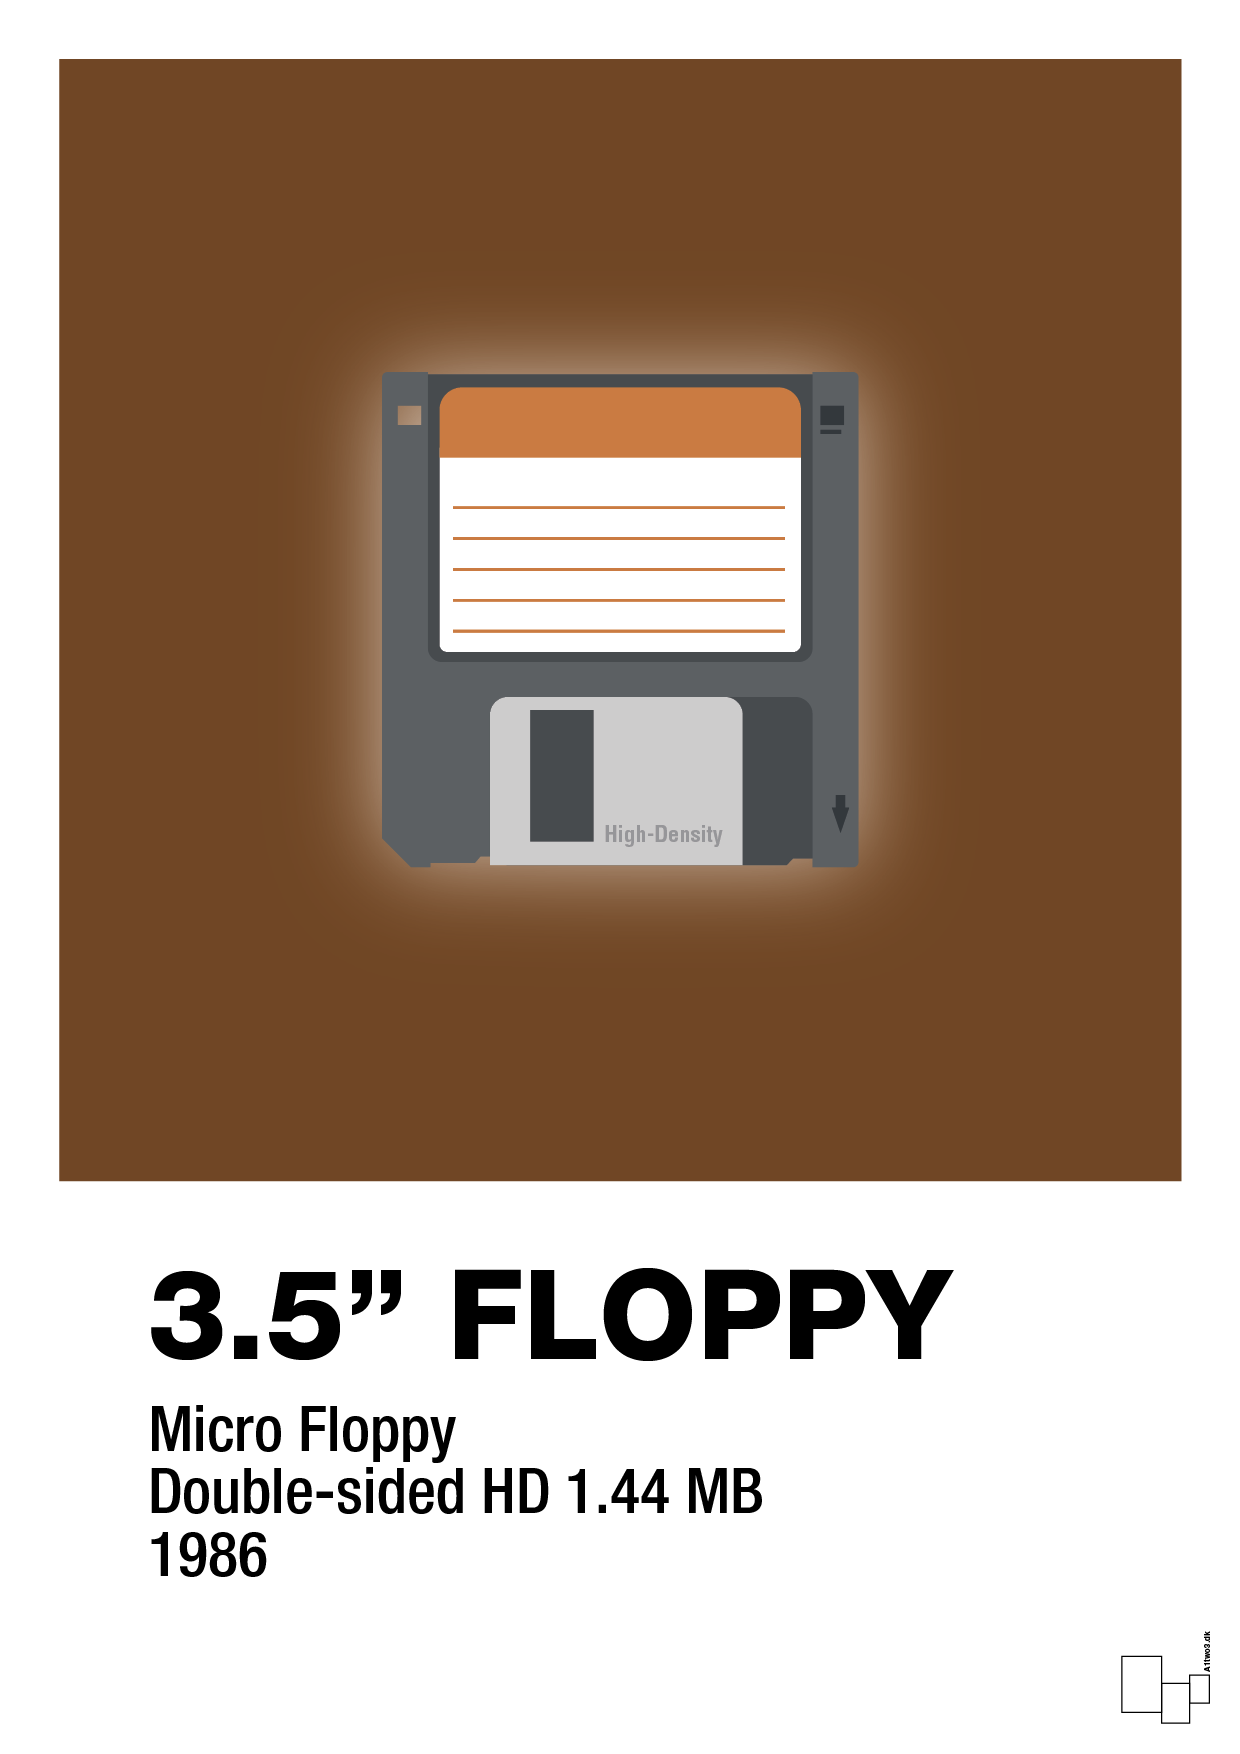 floppy disc 3.5" - Plakat med Grafik i Dark Brown